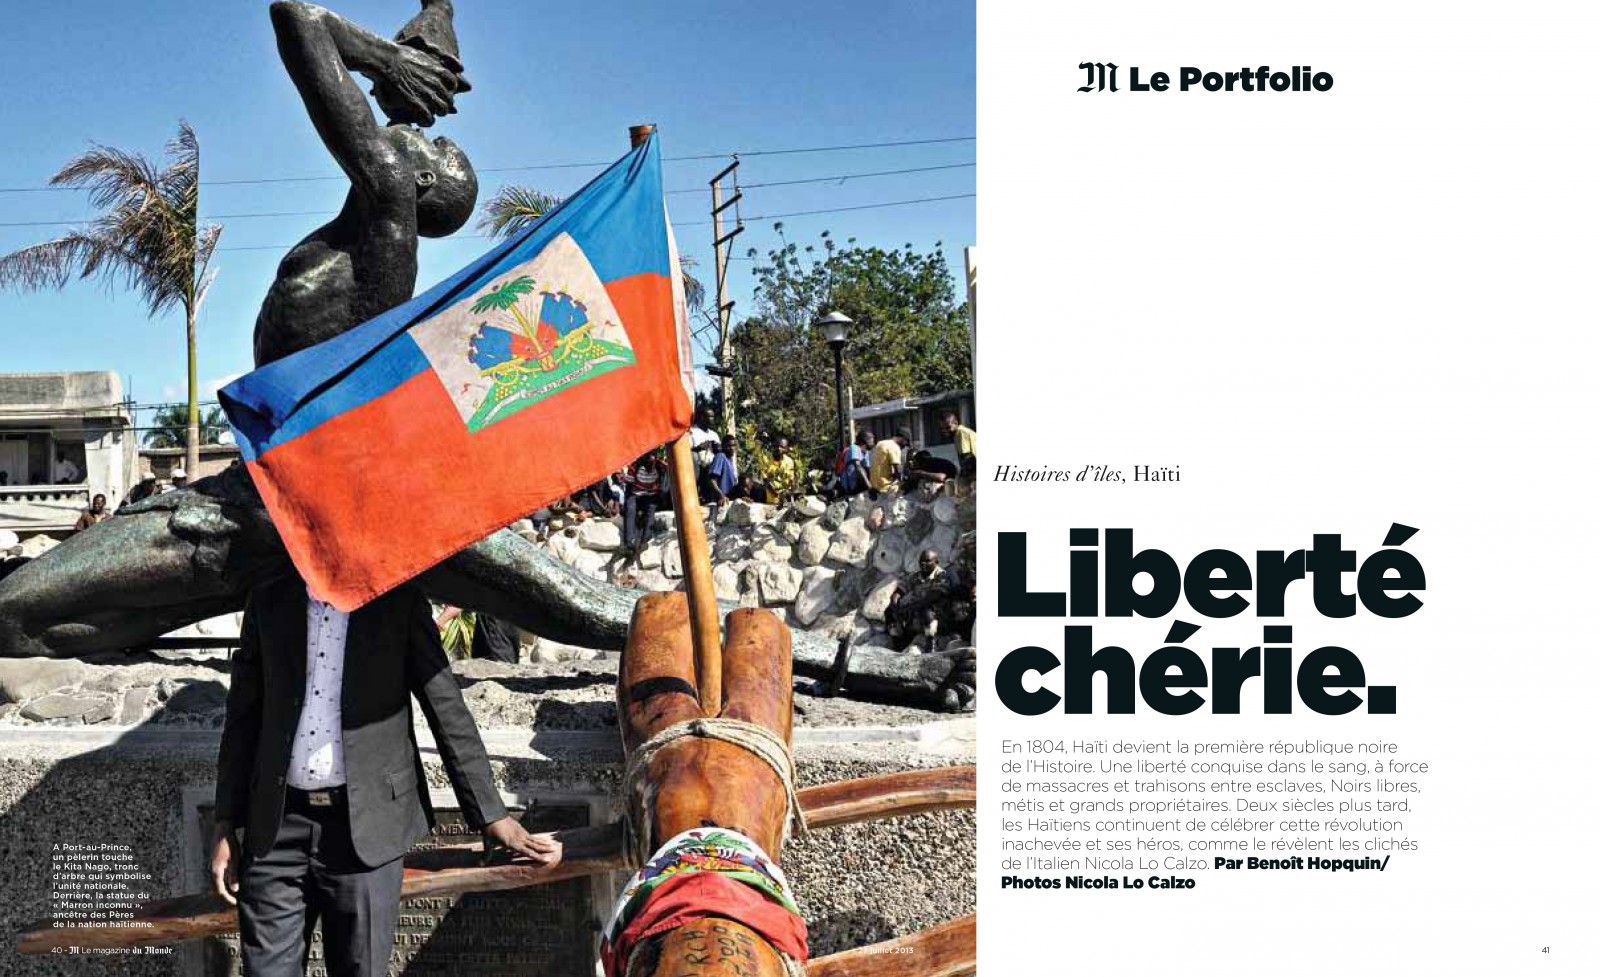 Le Monde M, Liberté Chérie, Text by Benoit Hopquin